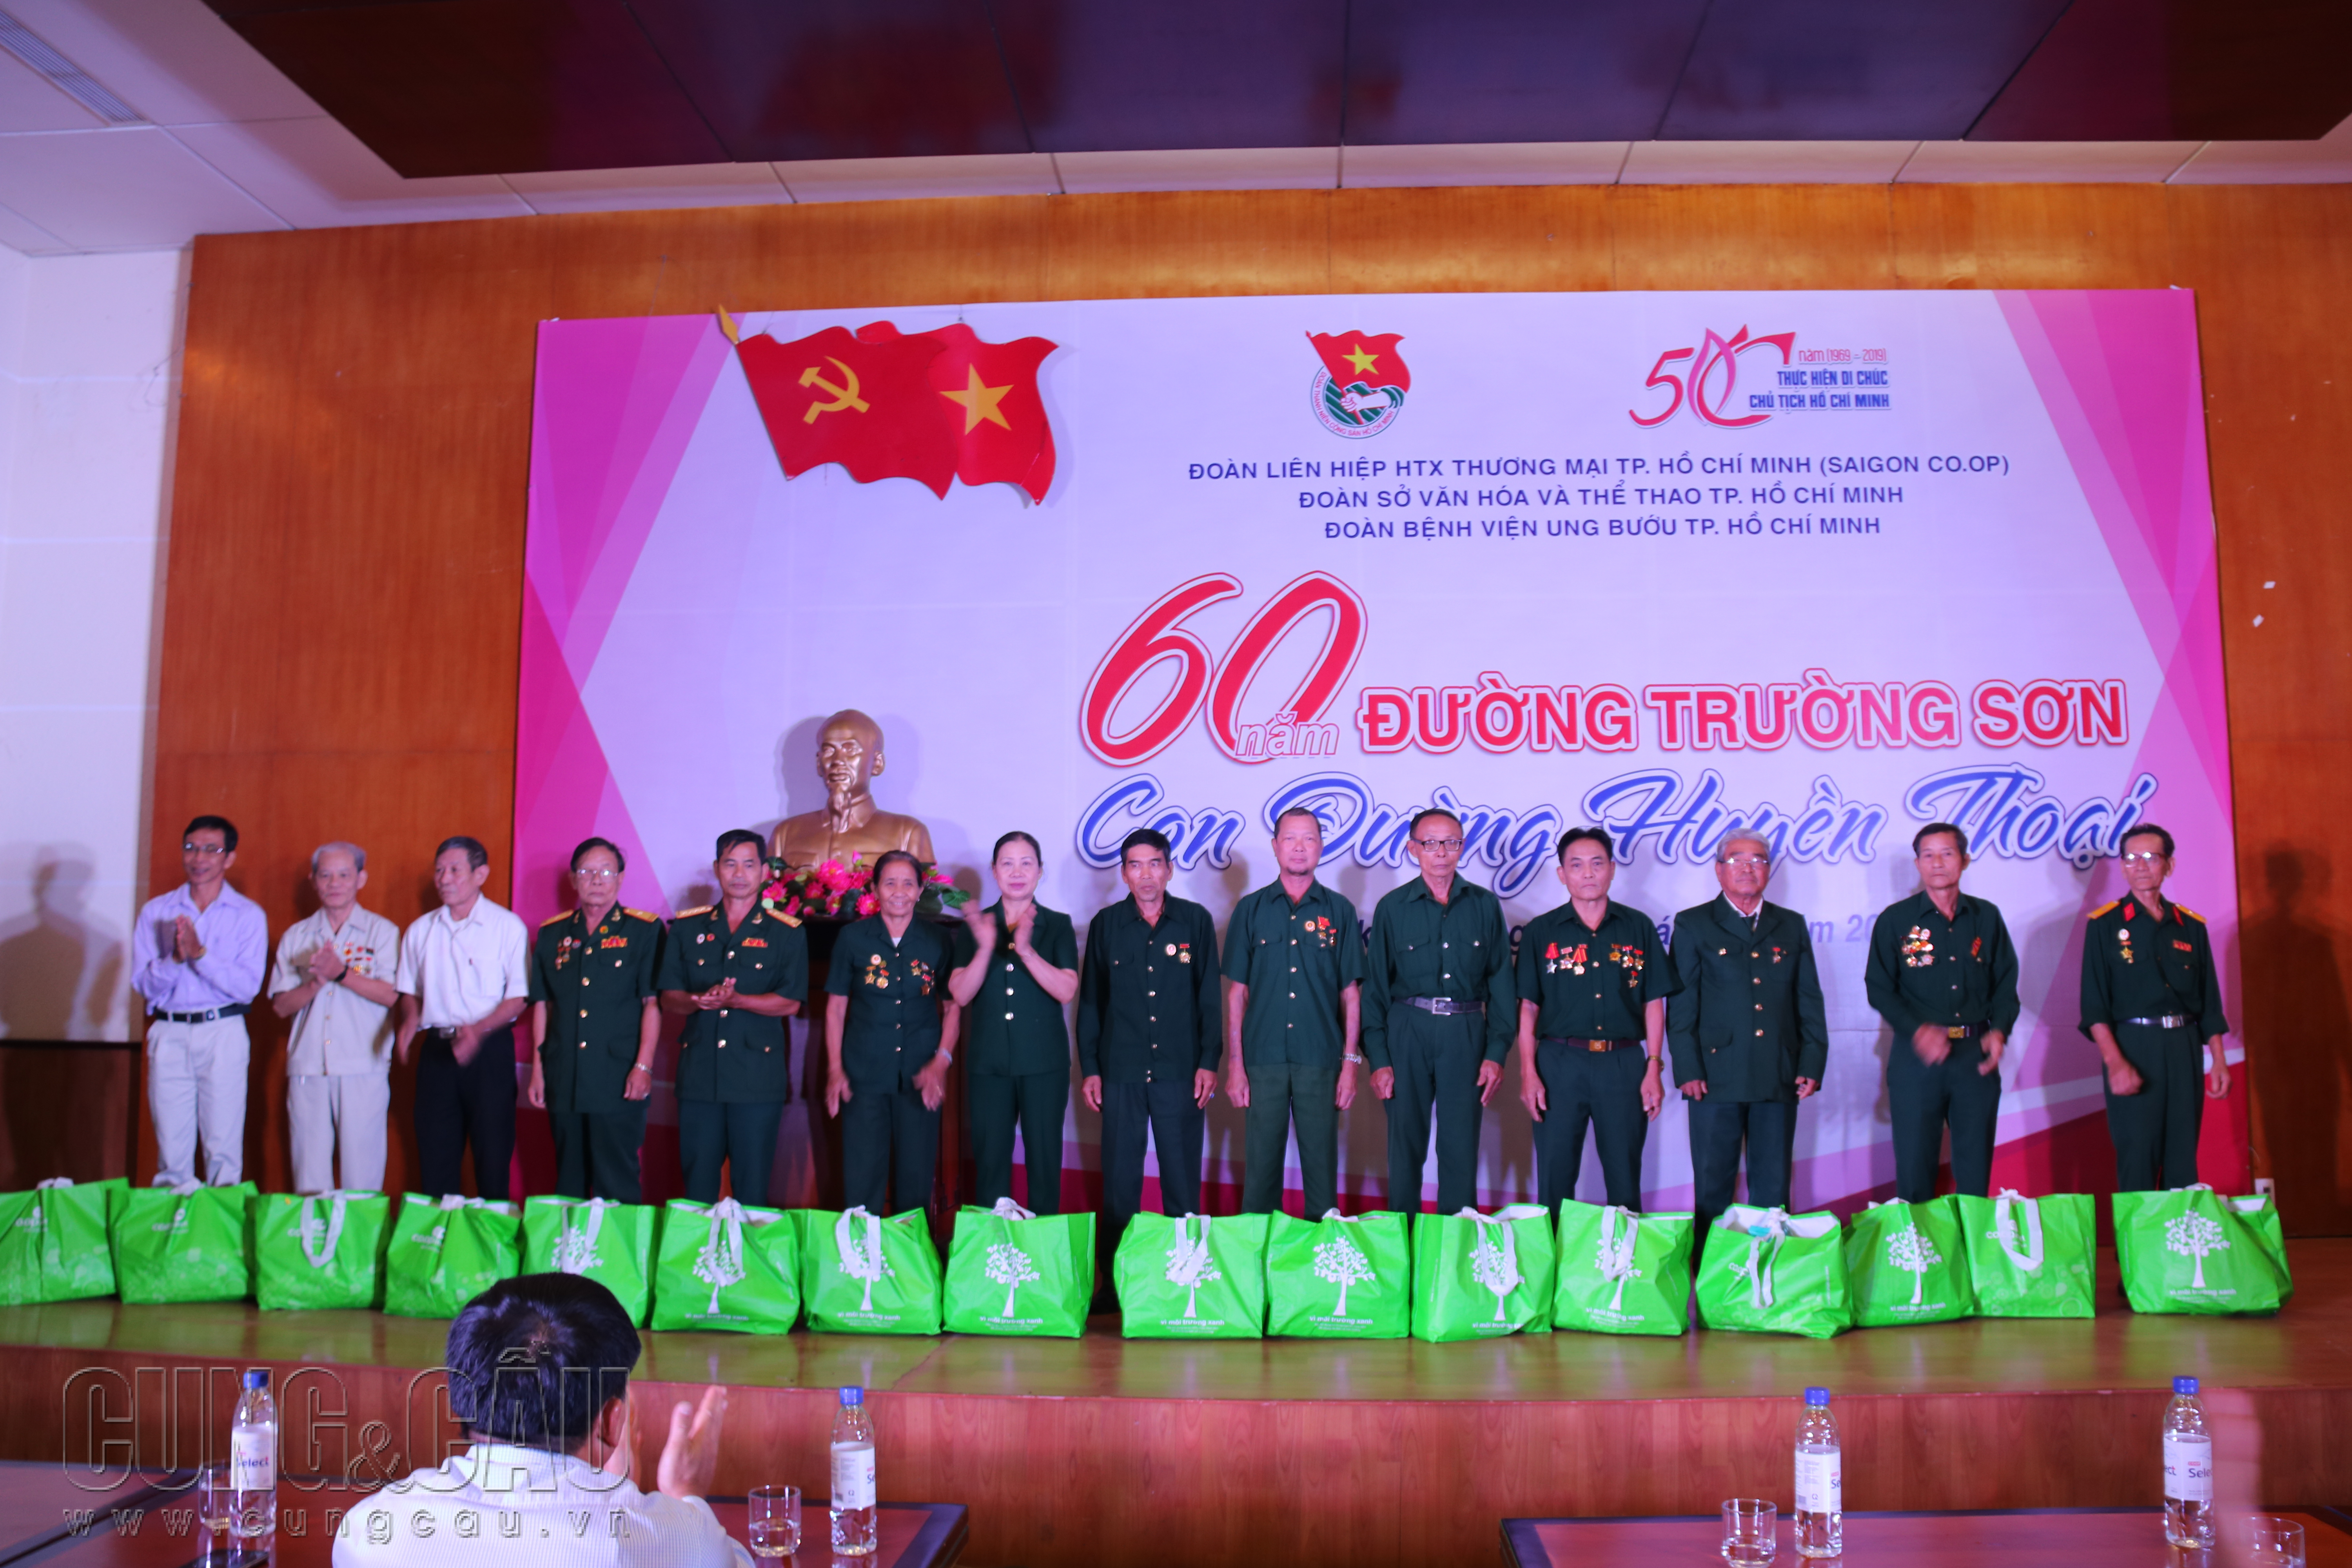 Anh Bùi Tấn Vĩnh đại diện tuổi trẻ Saigon Co.op dành tặng các phần quà cho các cô chú cựu bộ đội thanh niên xung phong.